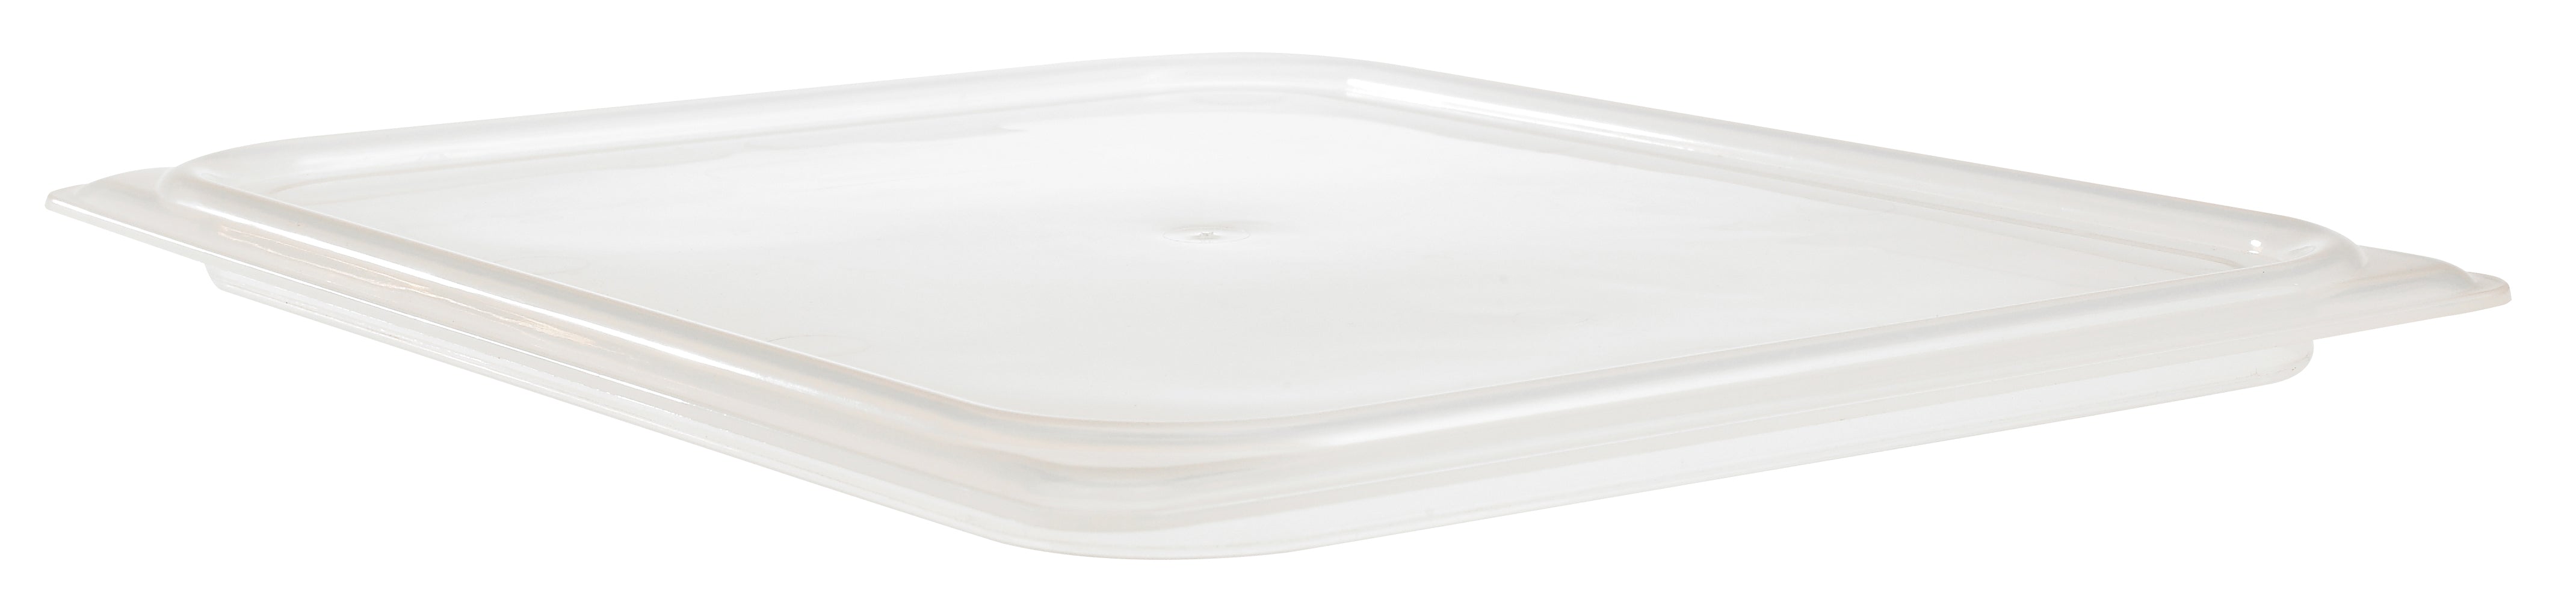 Cambro Lichtdurchlässiger, luftdichter Polypropylen Gastronorm Behälter Deckel GN1/2, 6 Stück im Karton - 20PPCWSC190